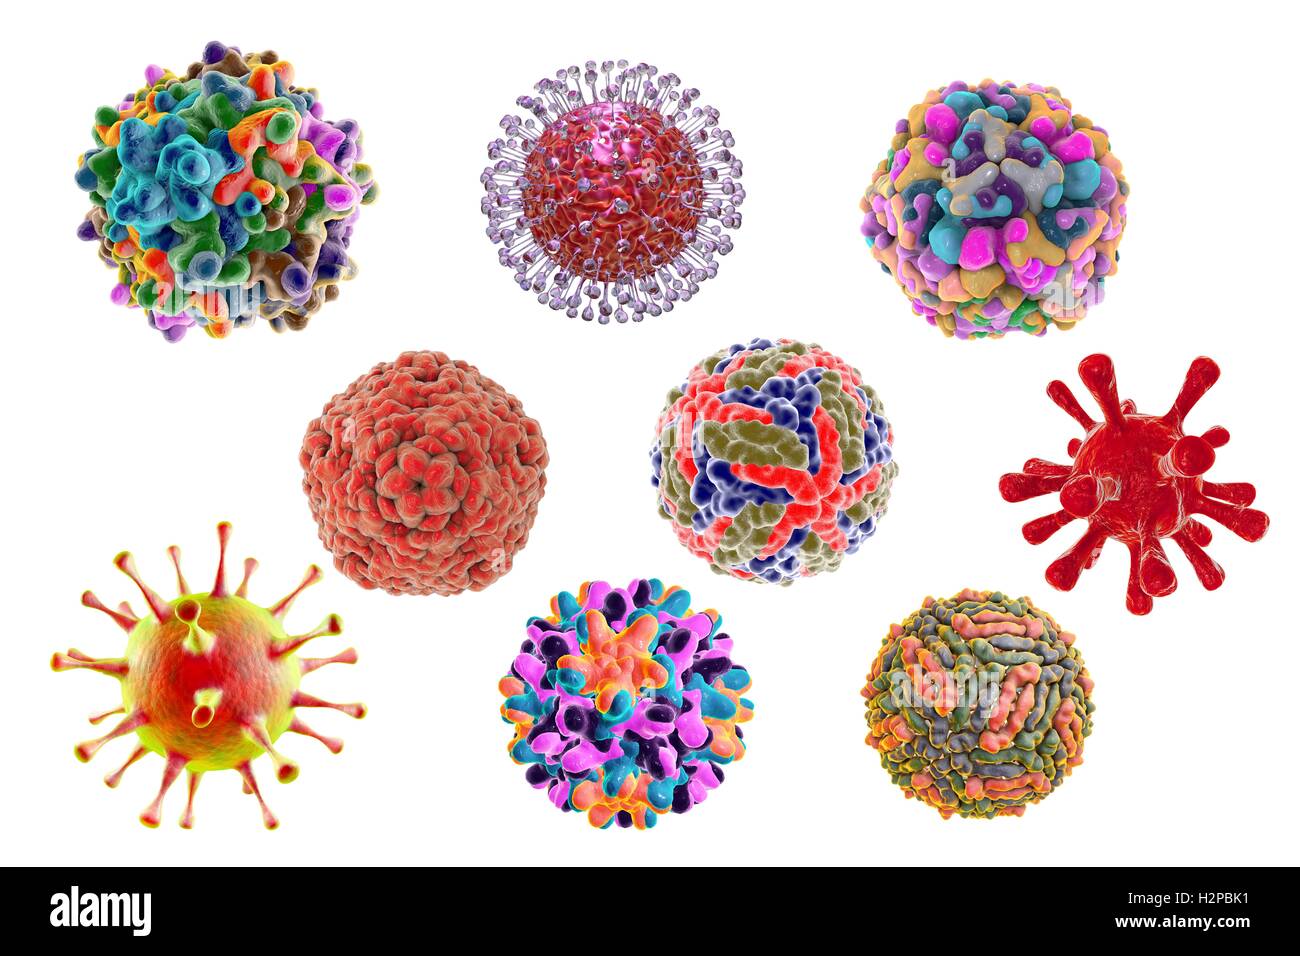 Human virus patogeni, illustrazione del computer. Foto Stock